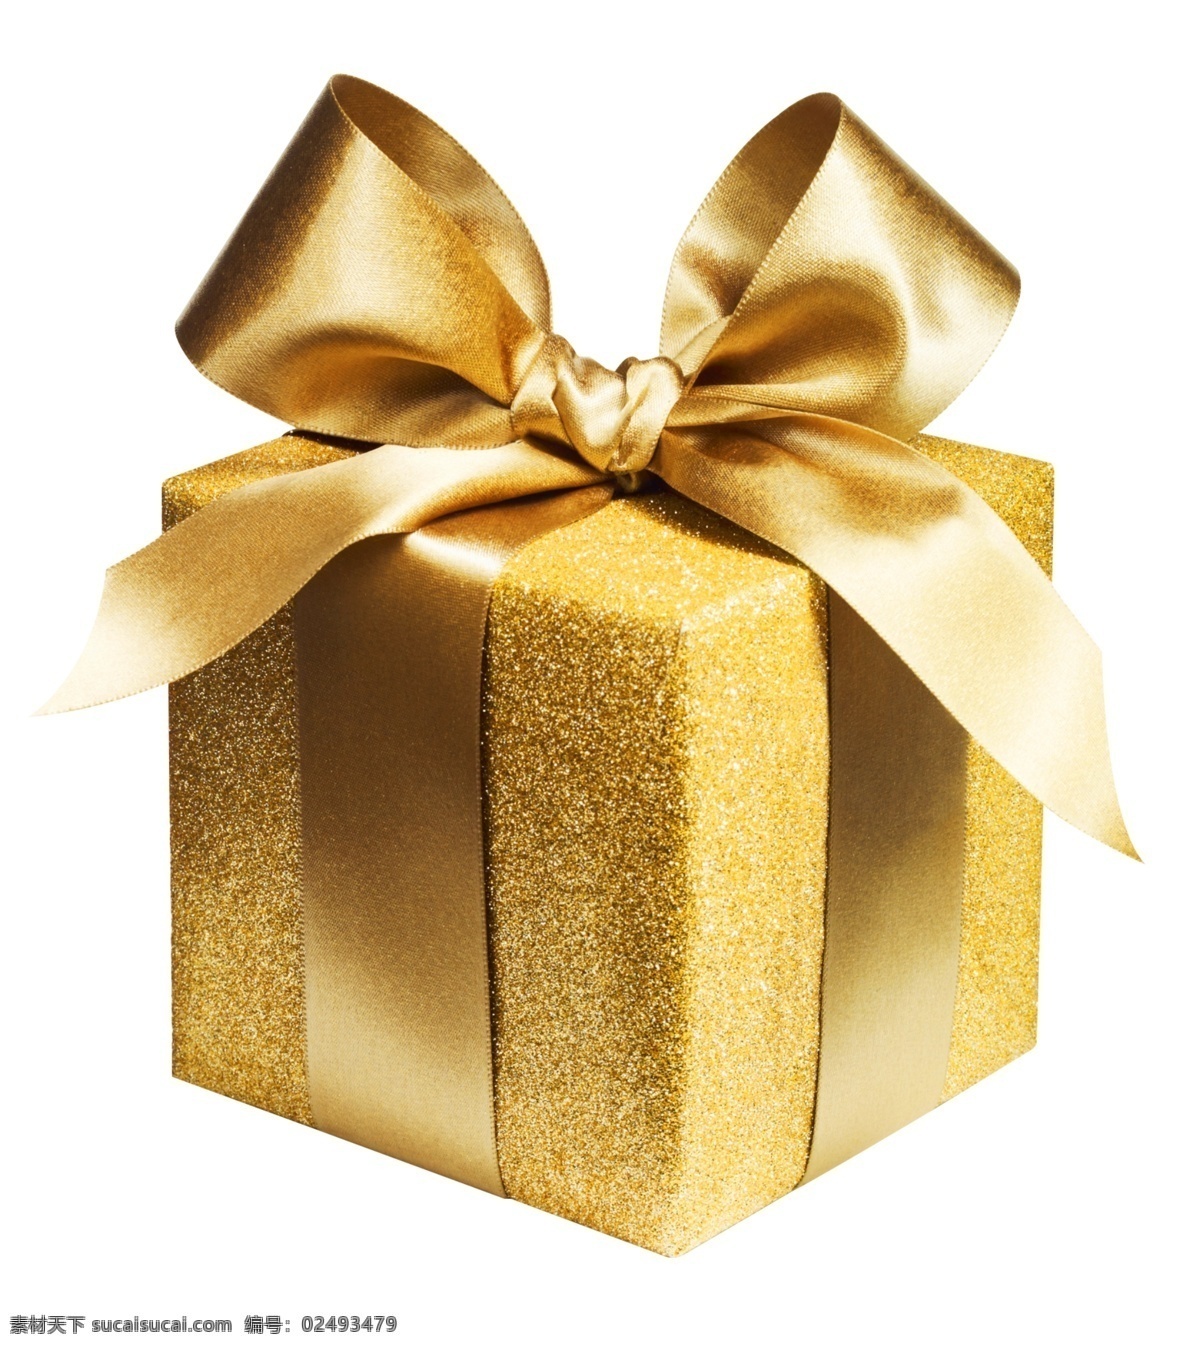 金色礼盒 礼盒 盒子 金属盒子 金色盒子 金色丝带 金色质感 金属球 活动背景 促销素材 促销